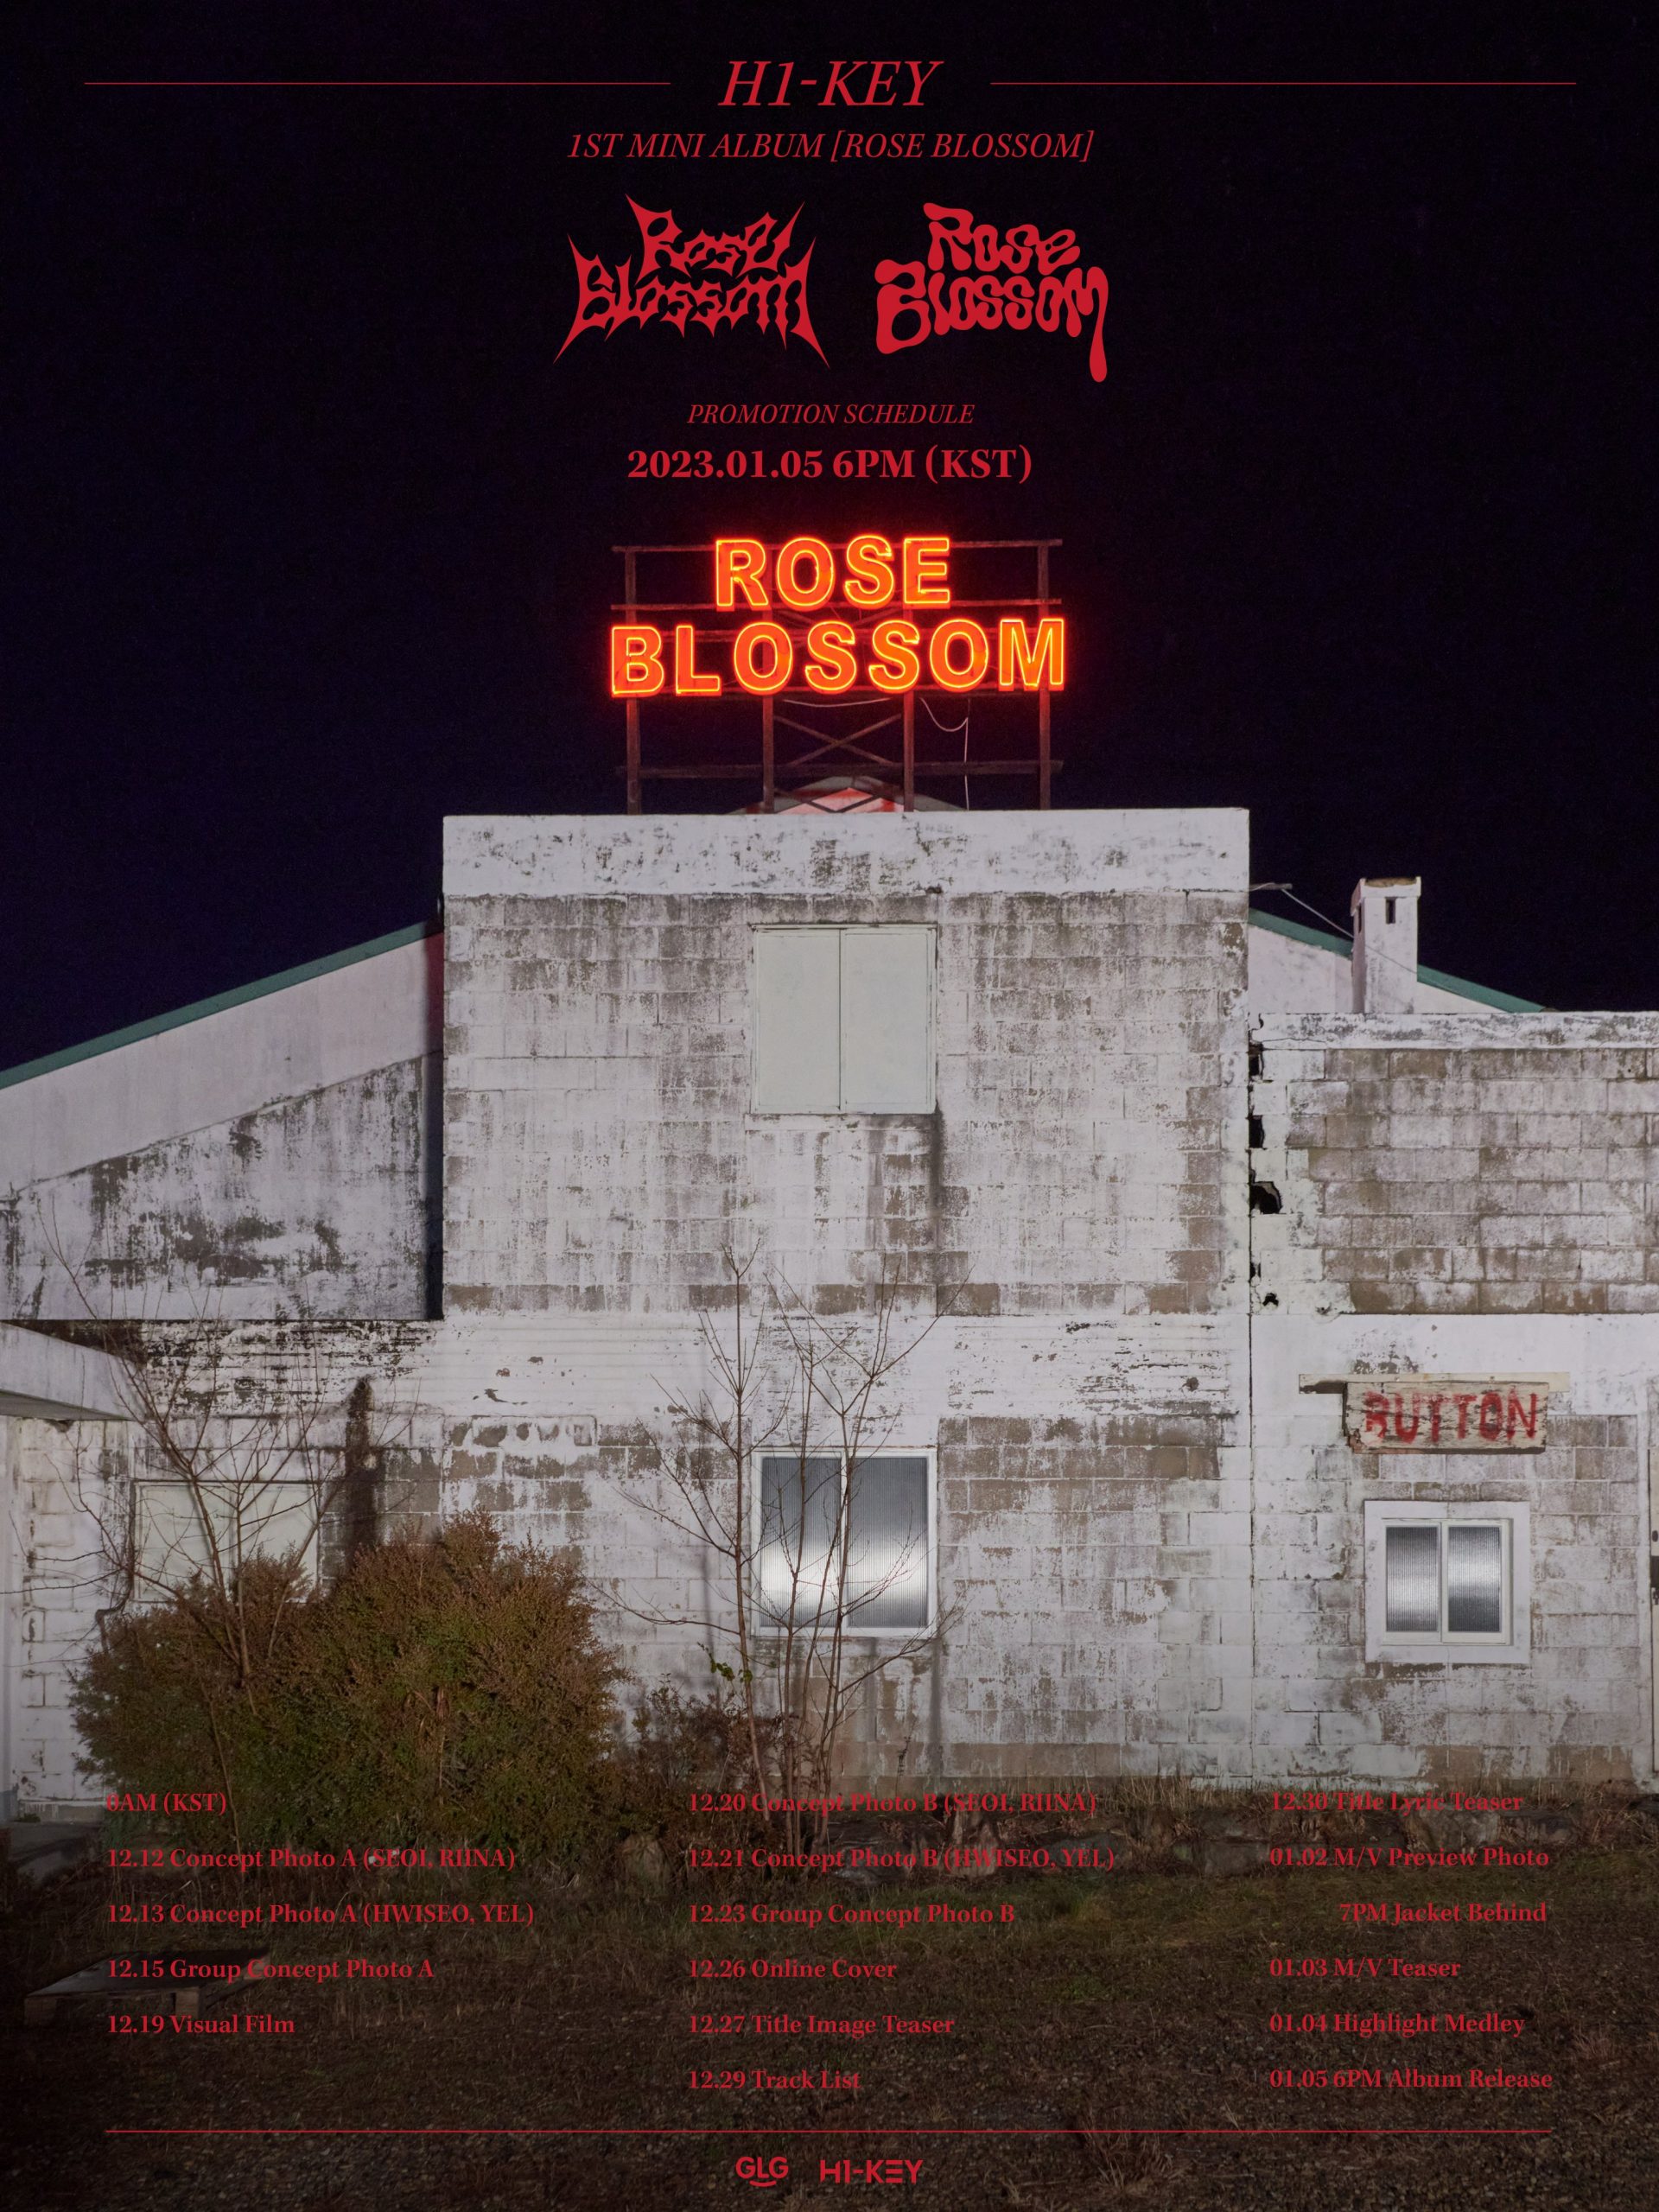 H1-KEY представили официальное расписание для первого мини-альбома "Rose Blossom"